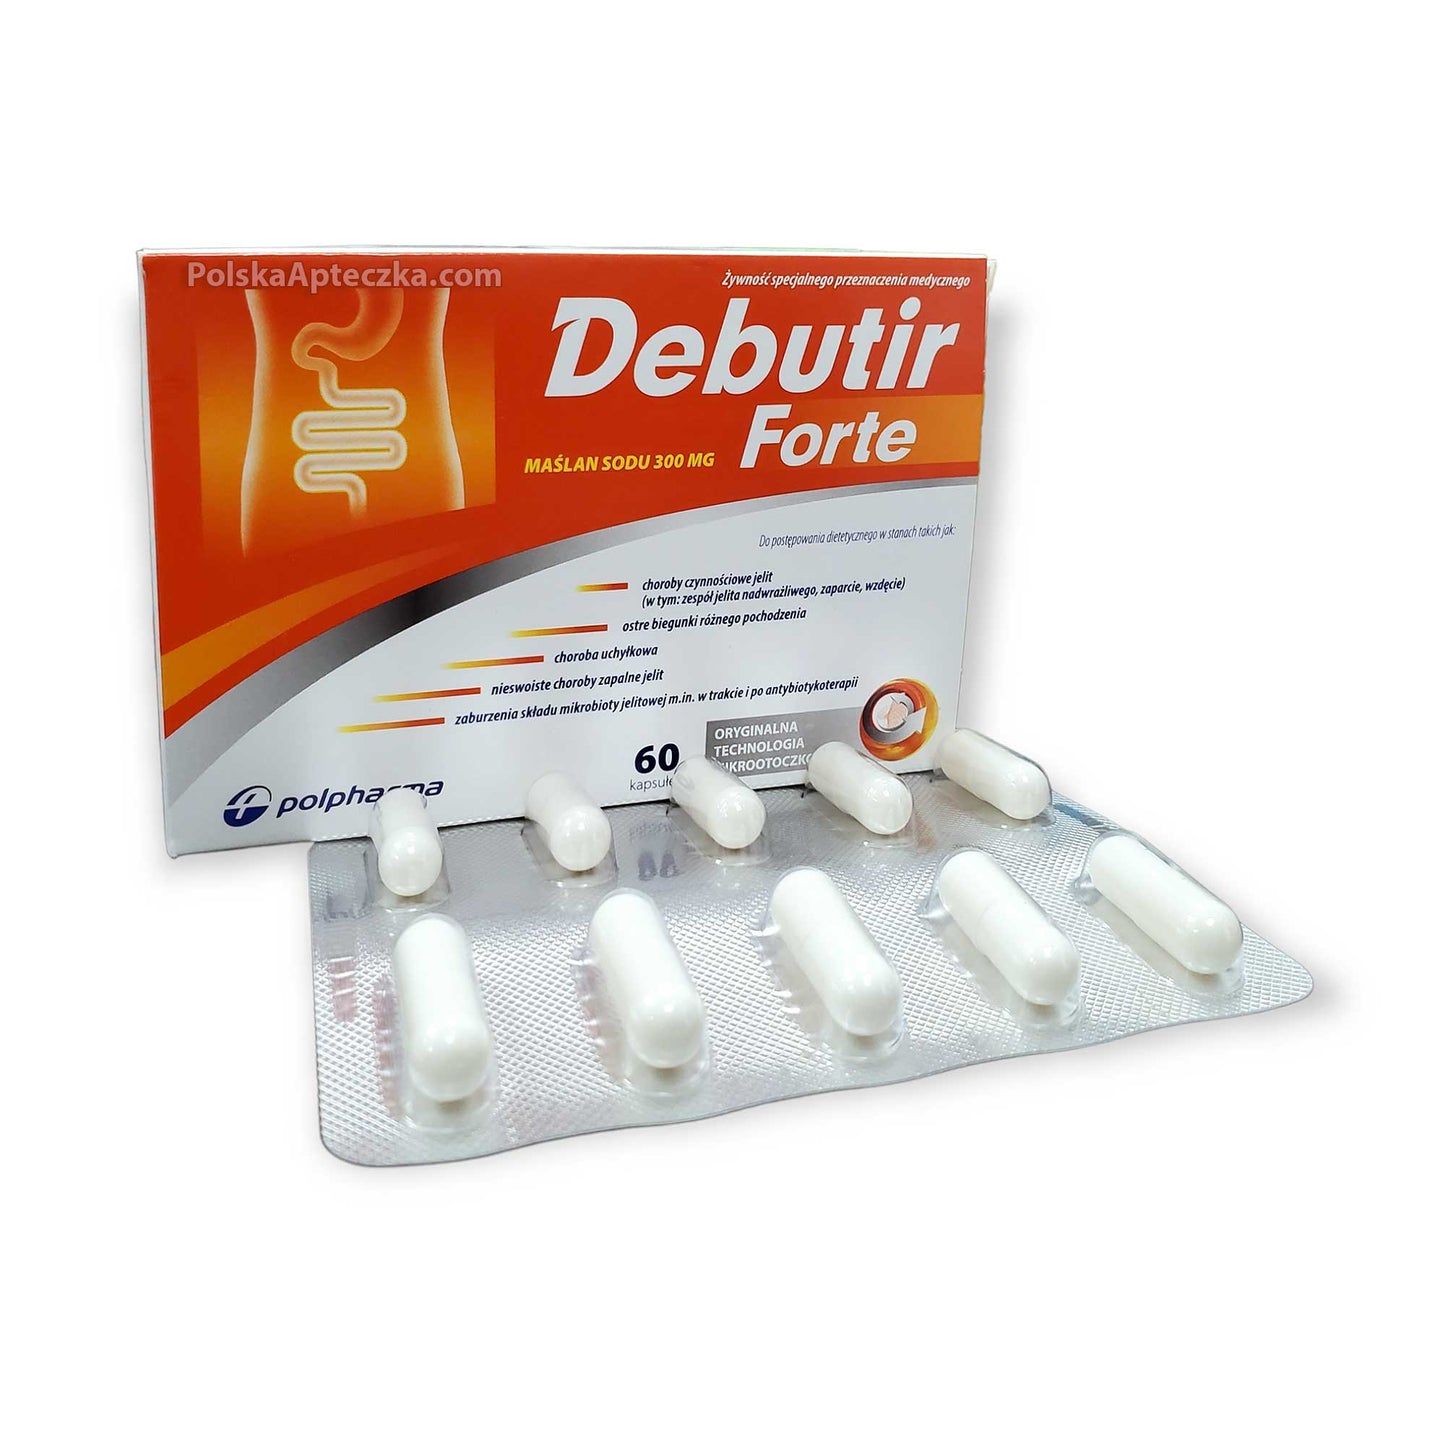 Debutir Forte (butyric acid) 300mg 60 capsules